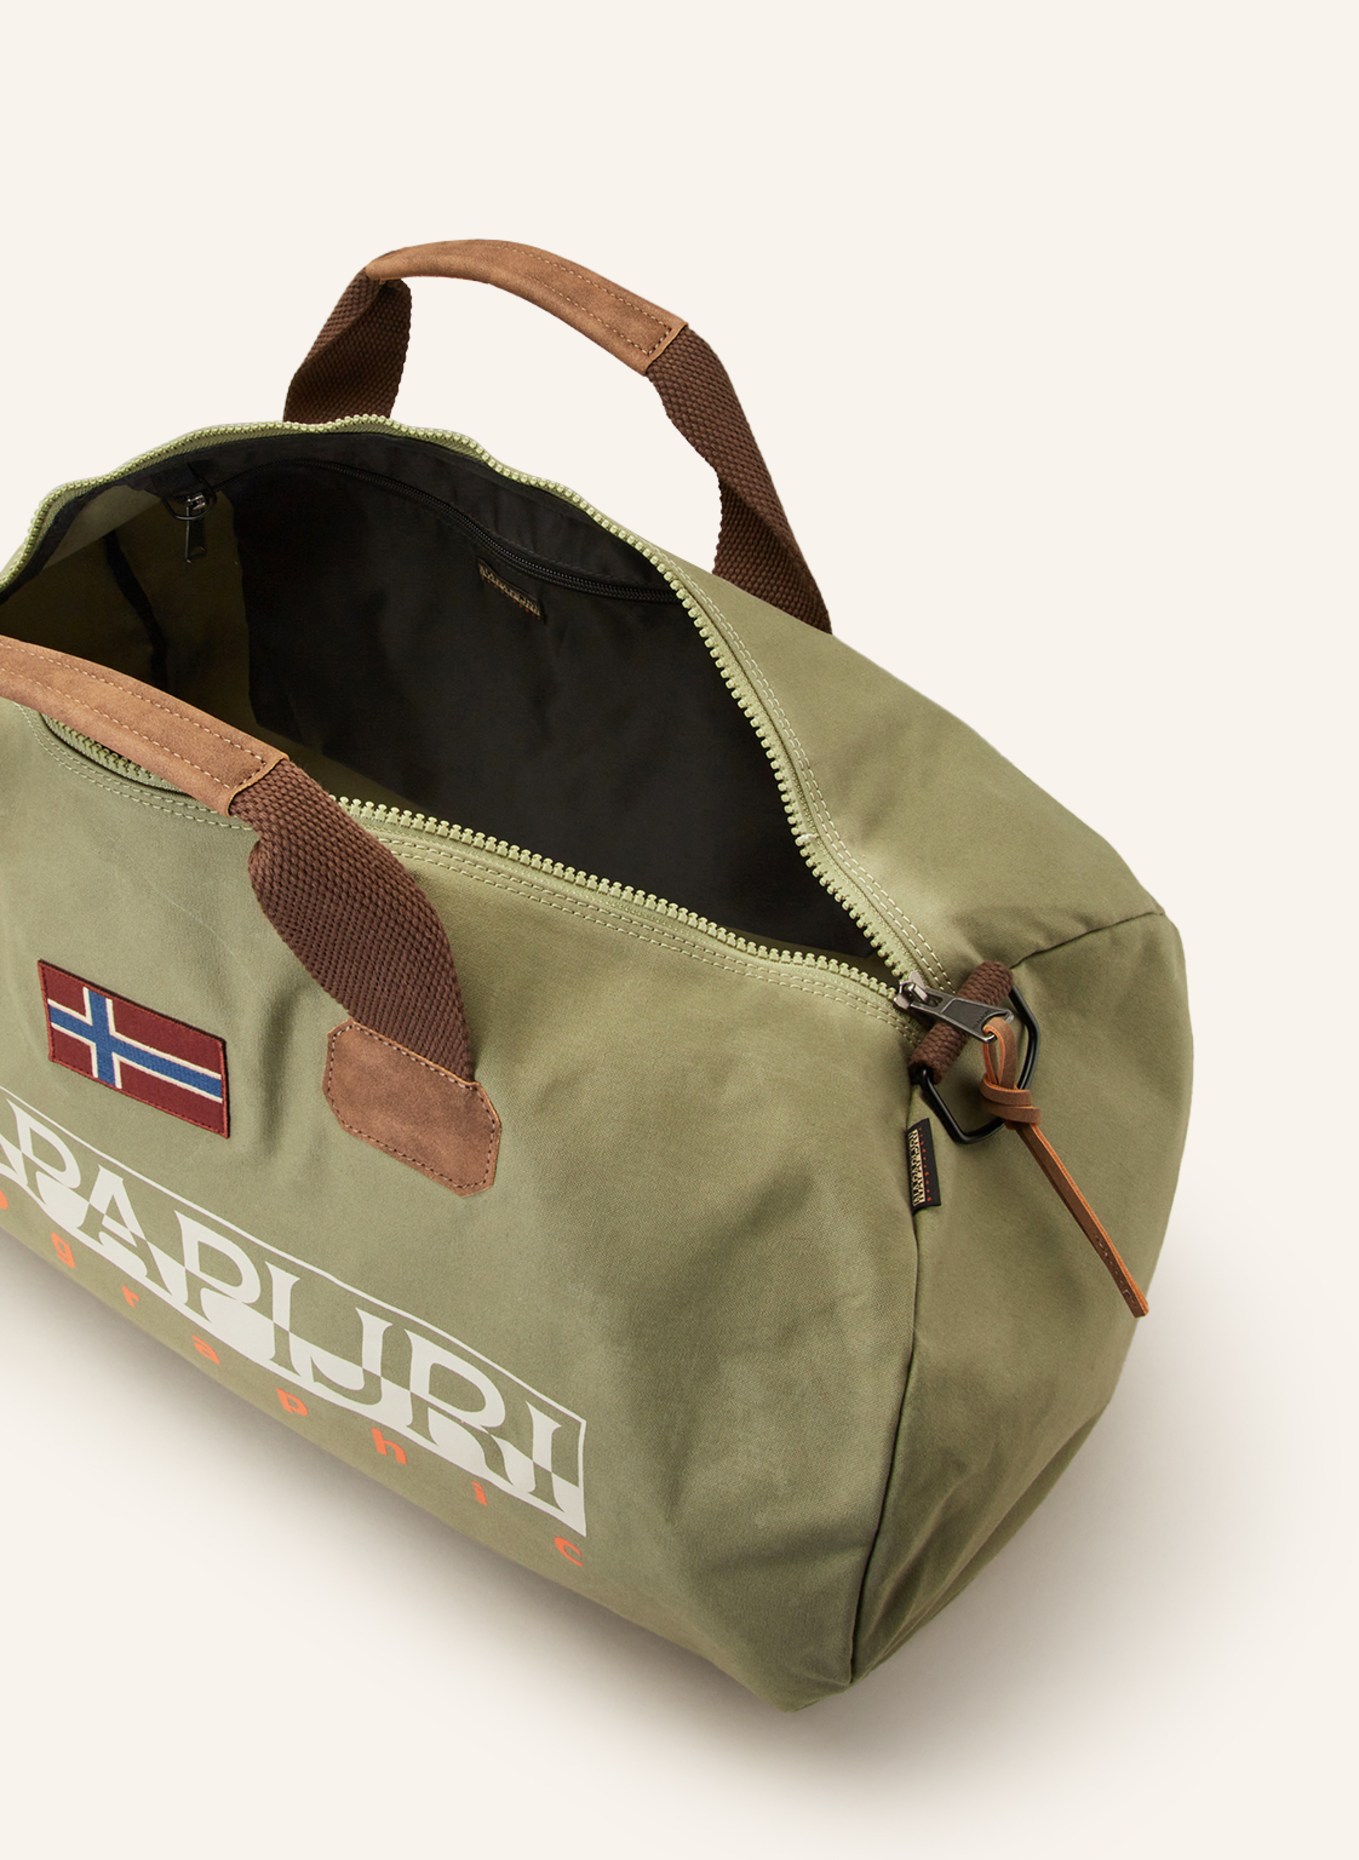 NAPAPIJRI Travel bag BERING 3, Color: OLIVE (Image 3)